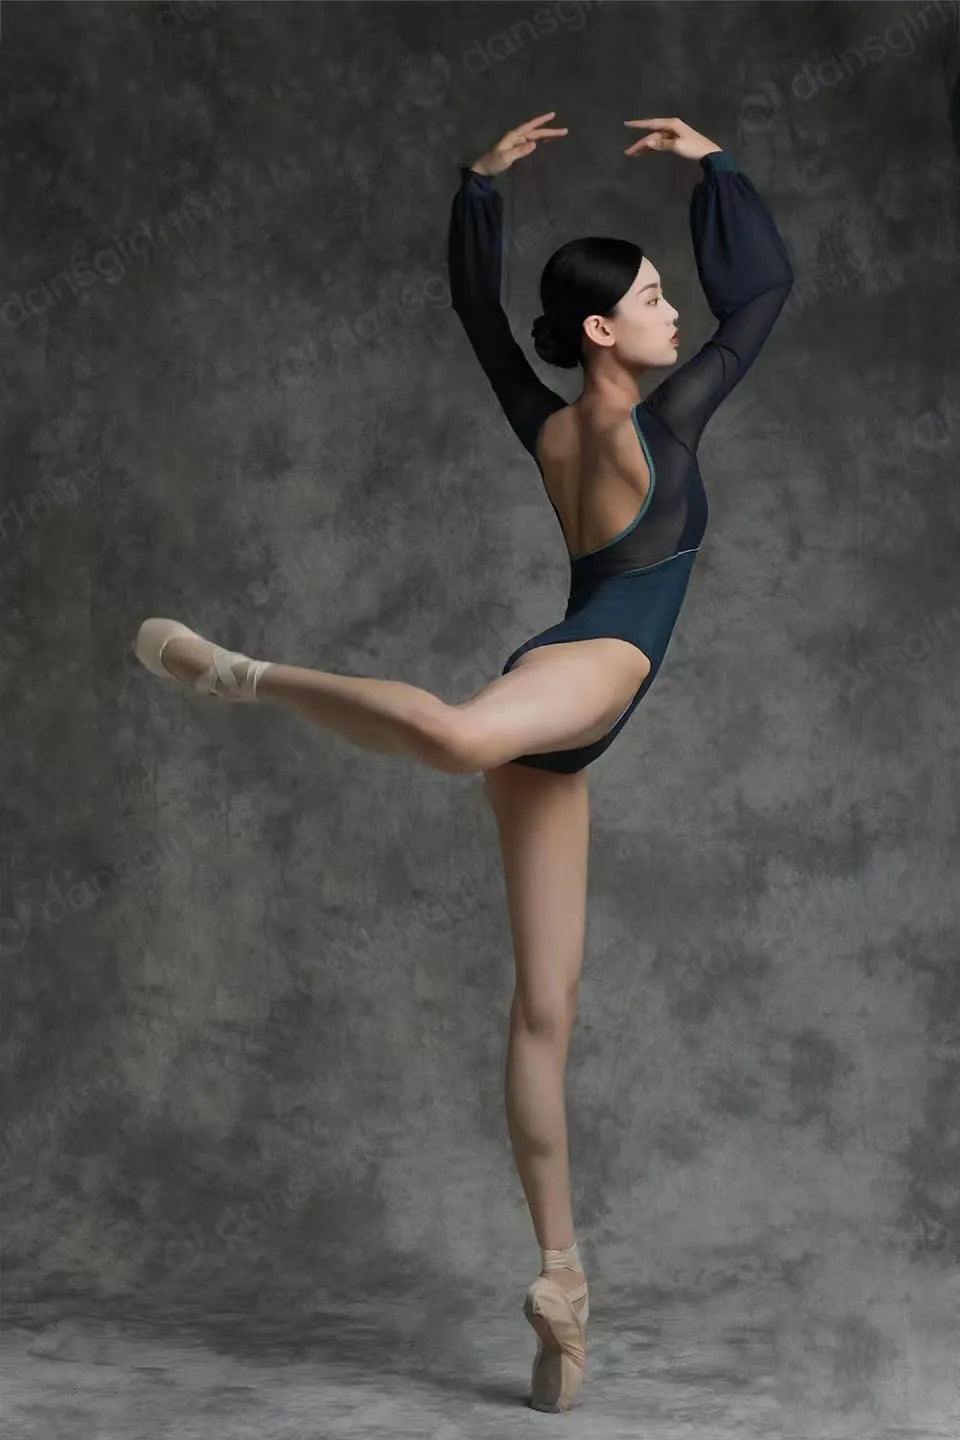 Balletttänzerin trägt einen schwarzen Trikotanzug und macht eine Arabeskenpose